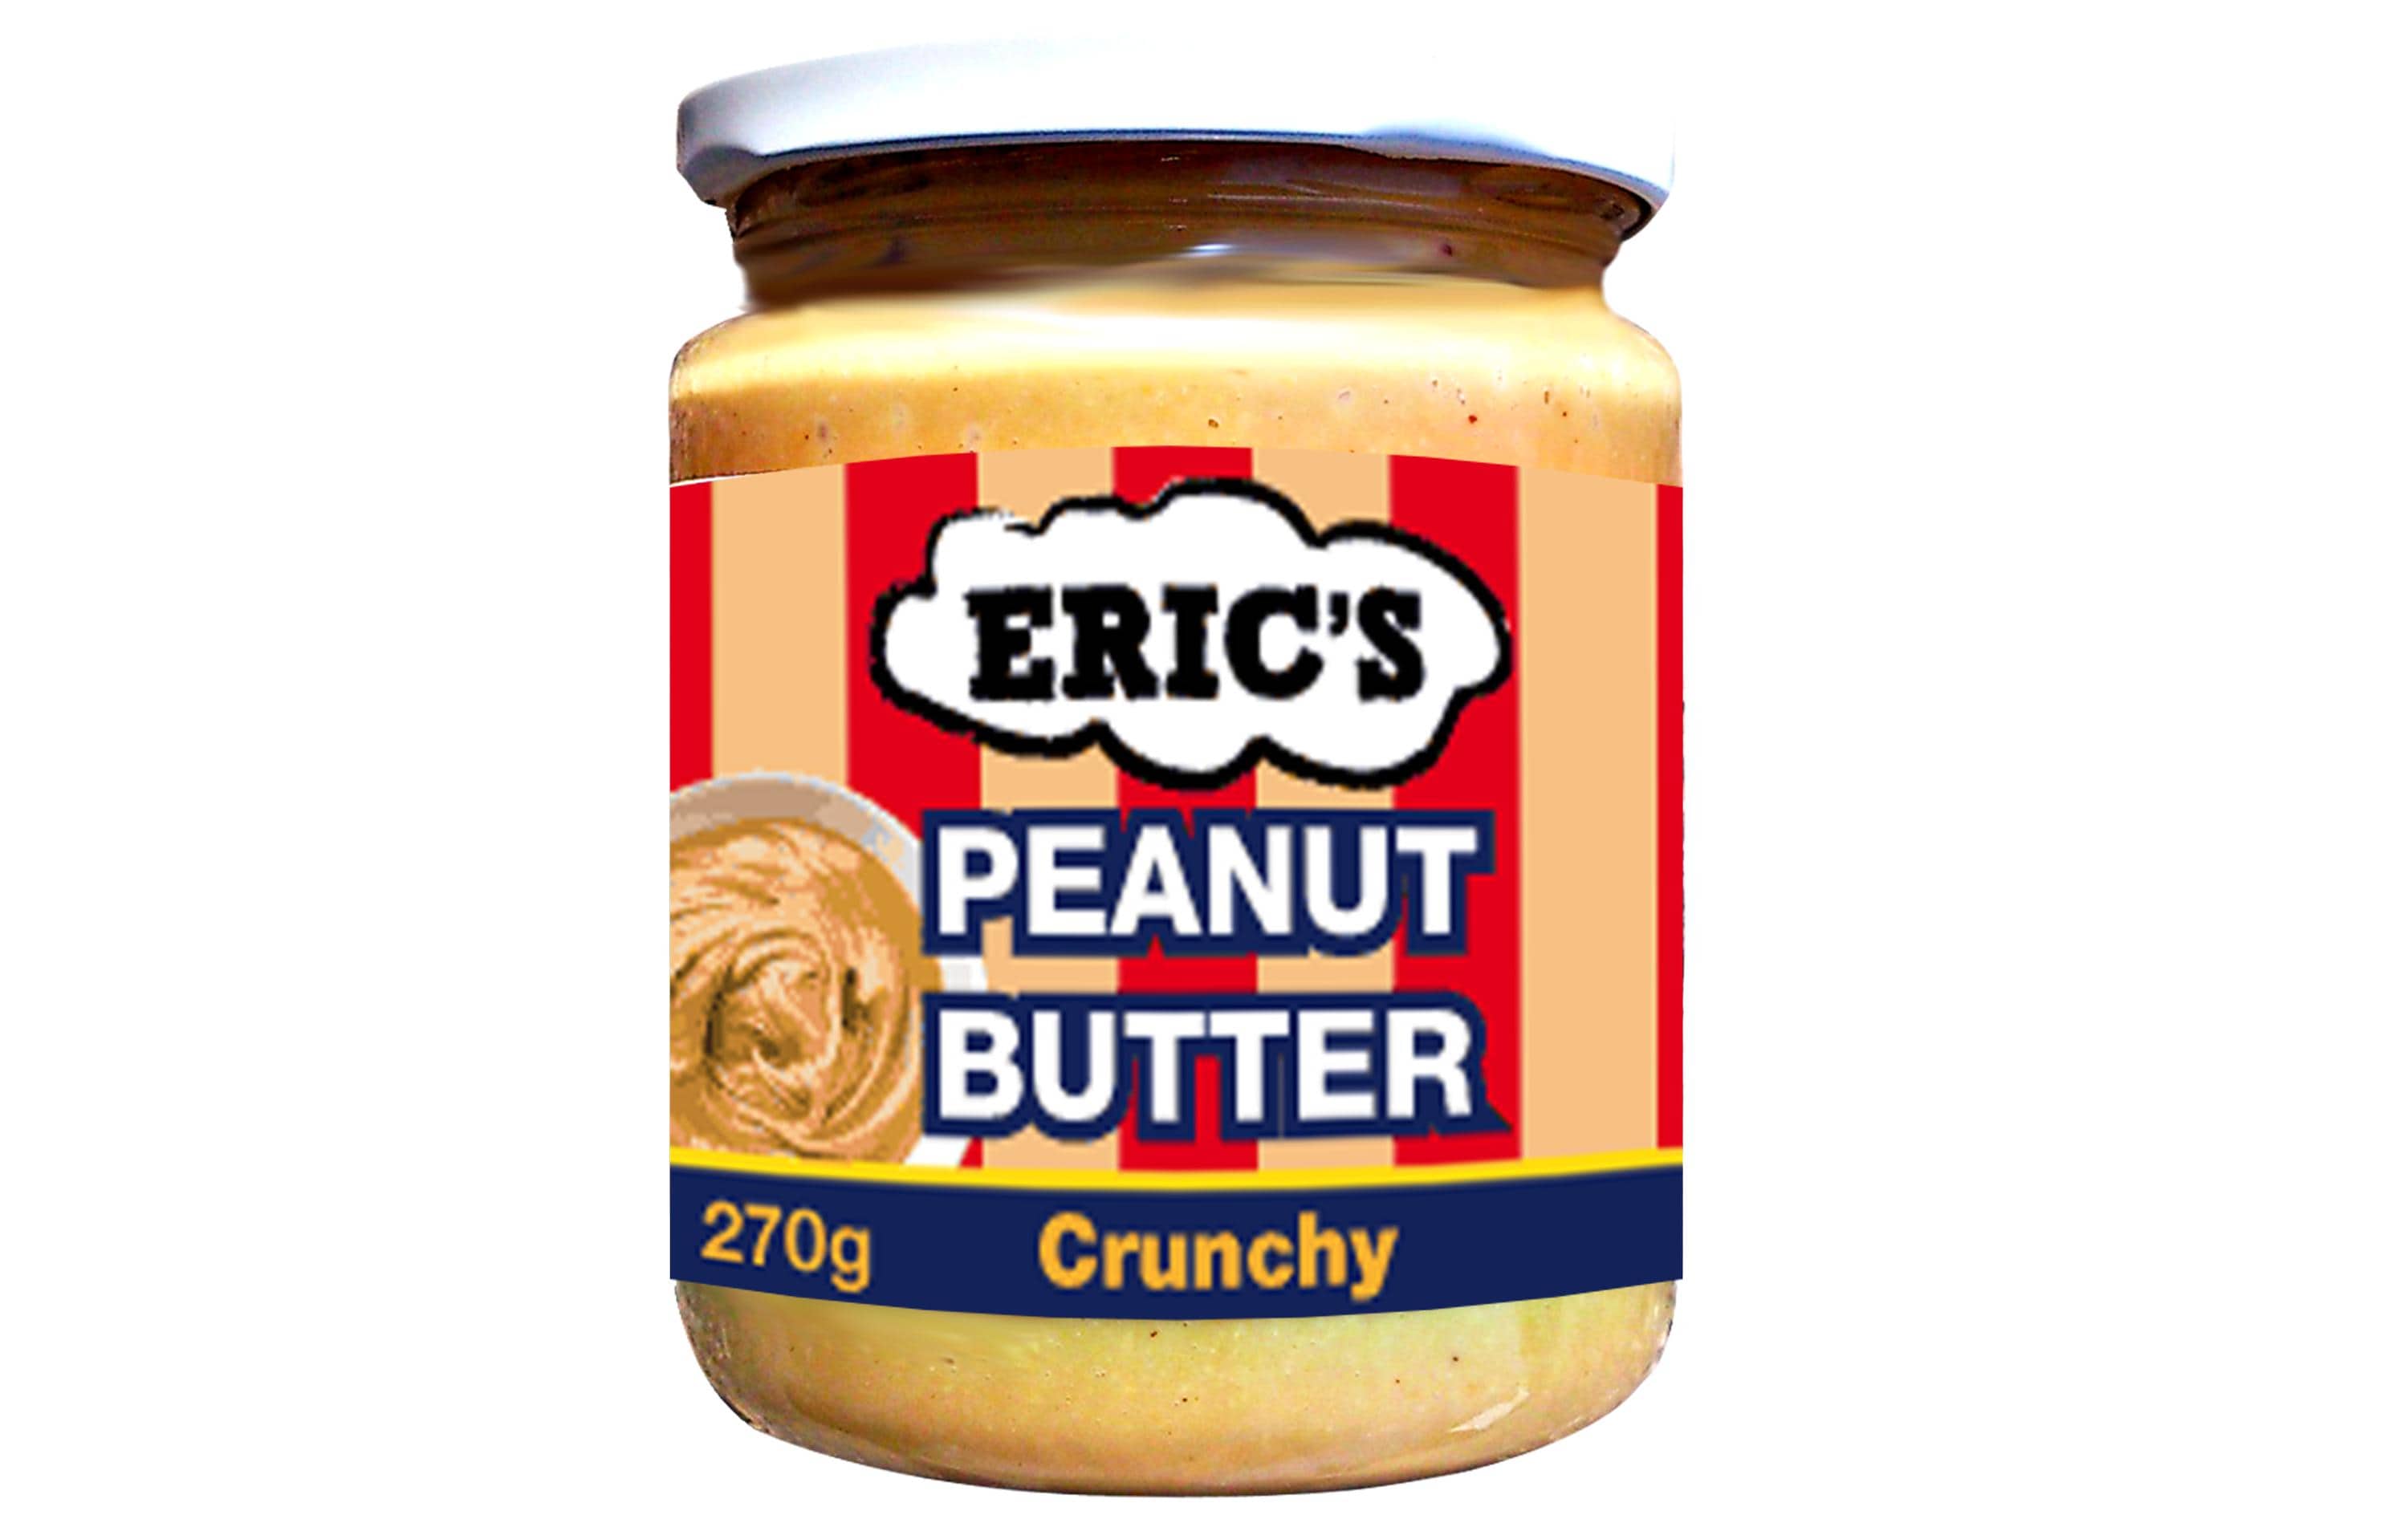 Eric's Peanut Butter Crunchy 270 g